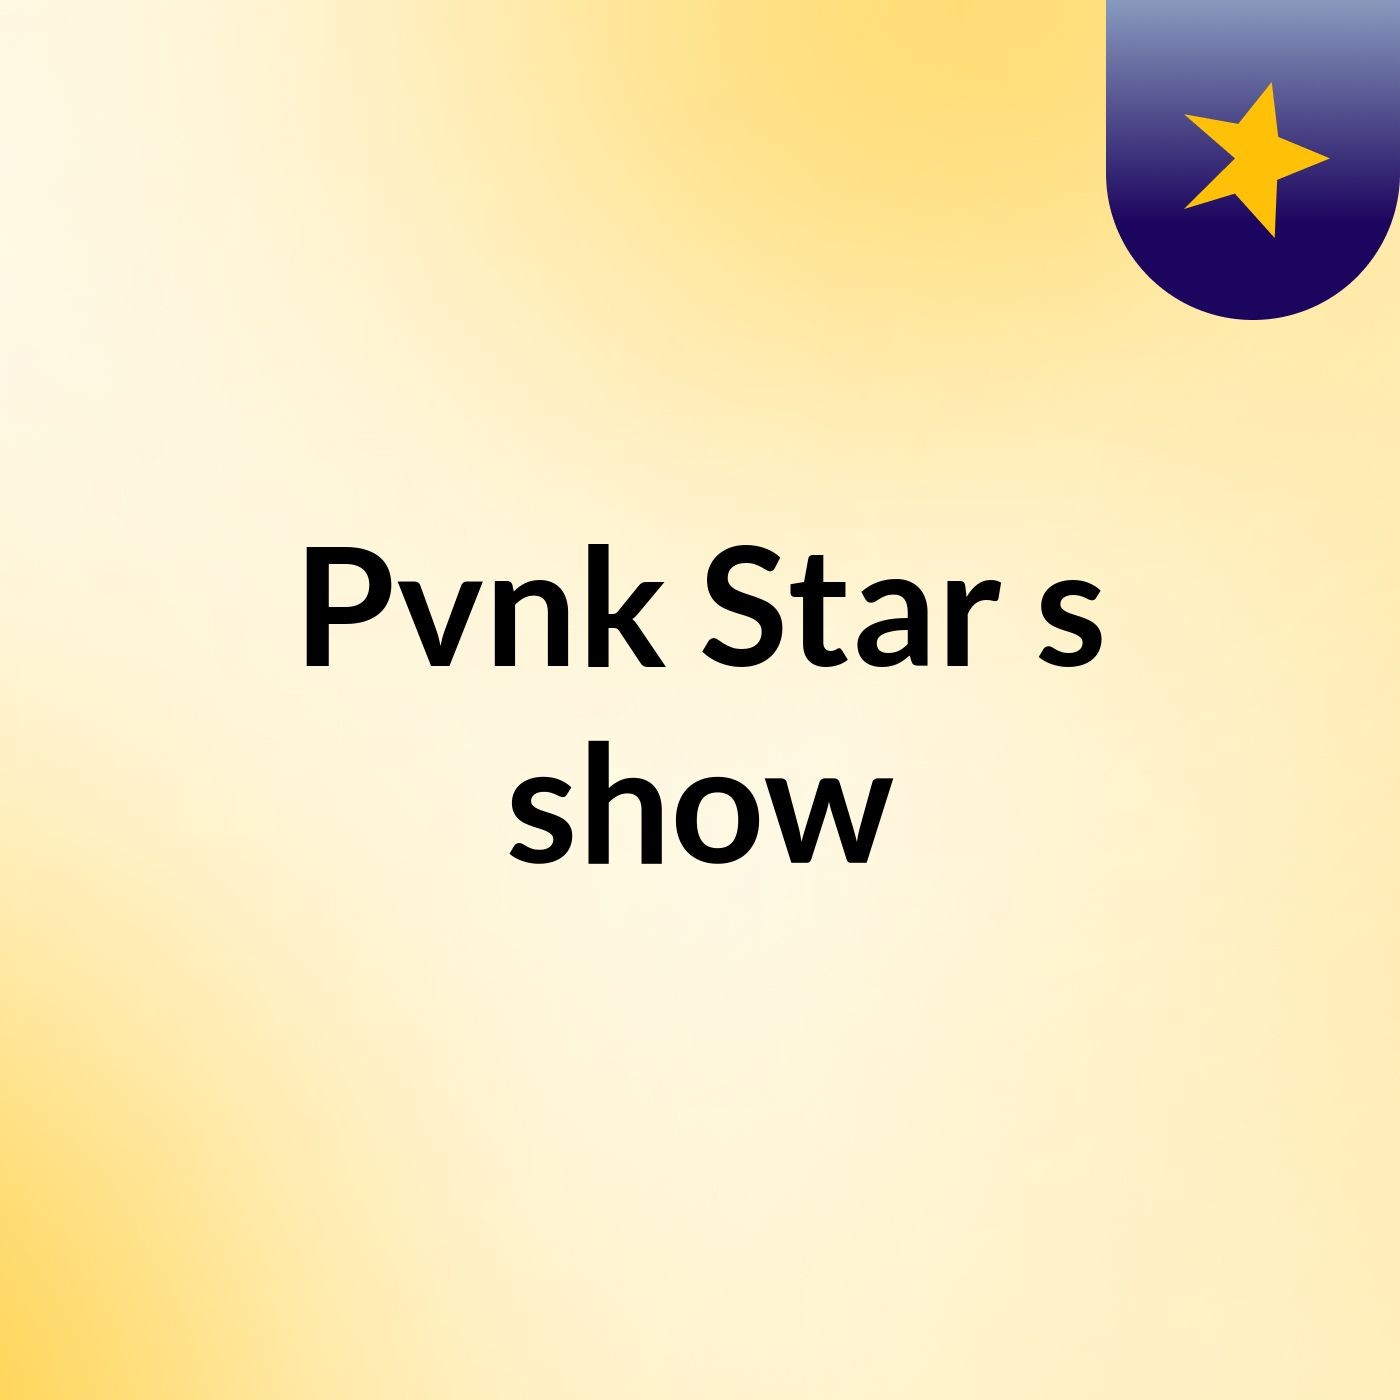 Pvnk Star's show